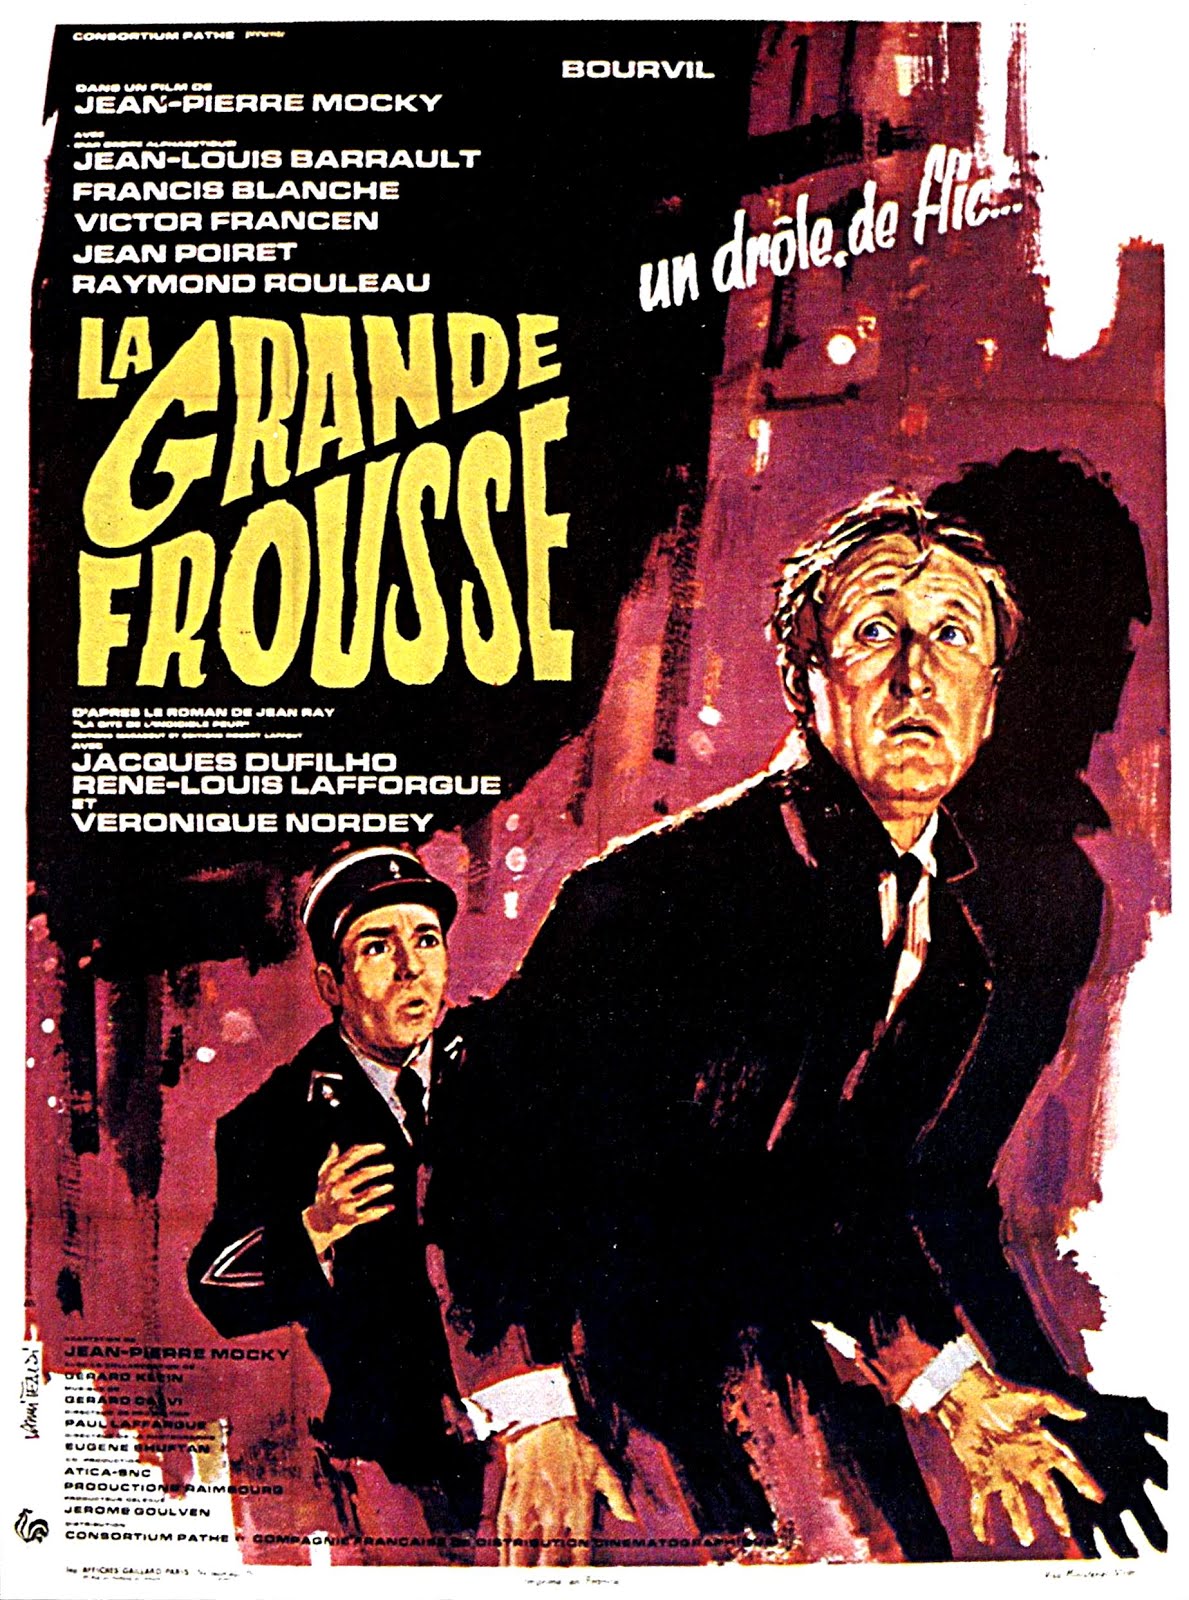 La grande frousse (1964) Jean-Pierre Mocky - La cité de l'indicible peur (13.04.1964 / 29.05.1964)